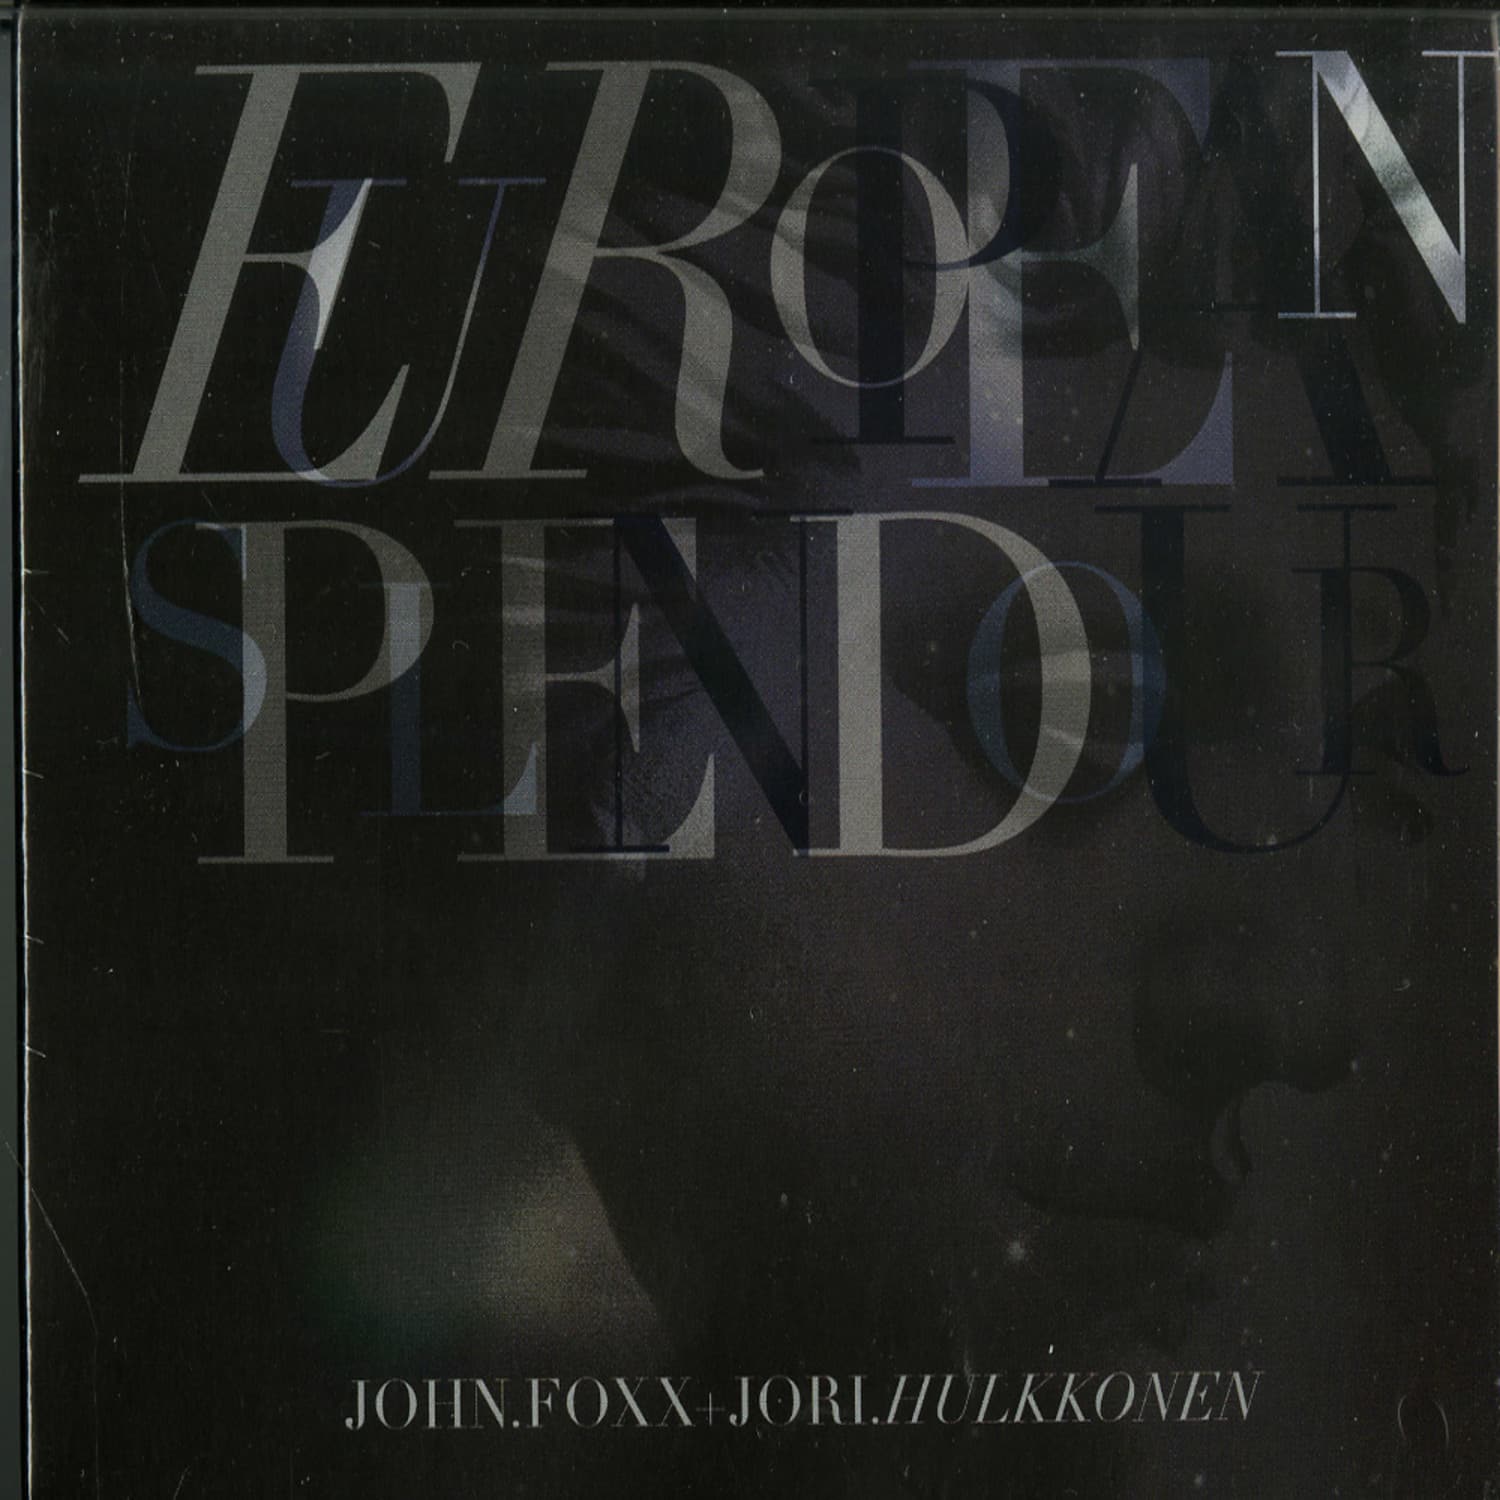 John Foxx & Jori Hulkkonen - EUROPEAN SPLENDOUR 